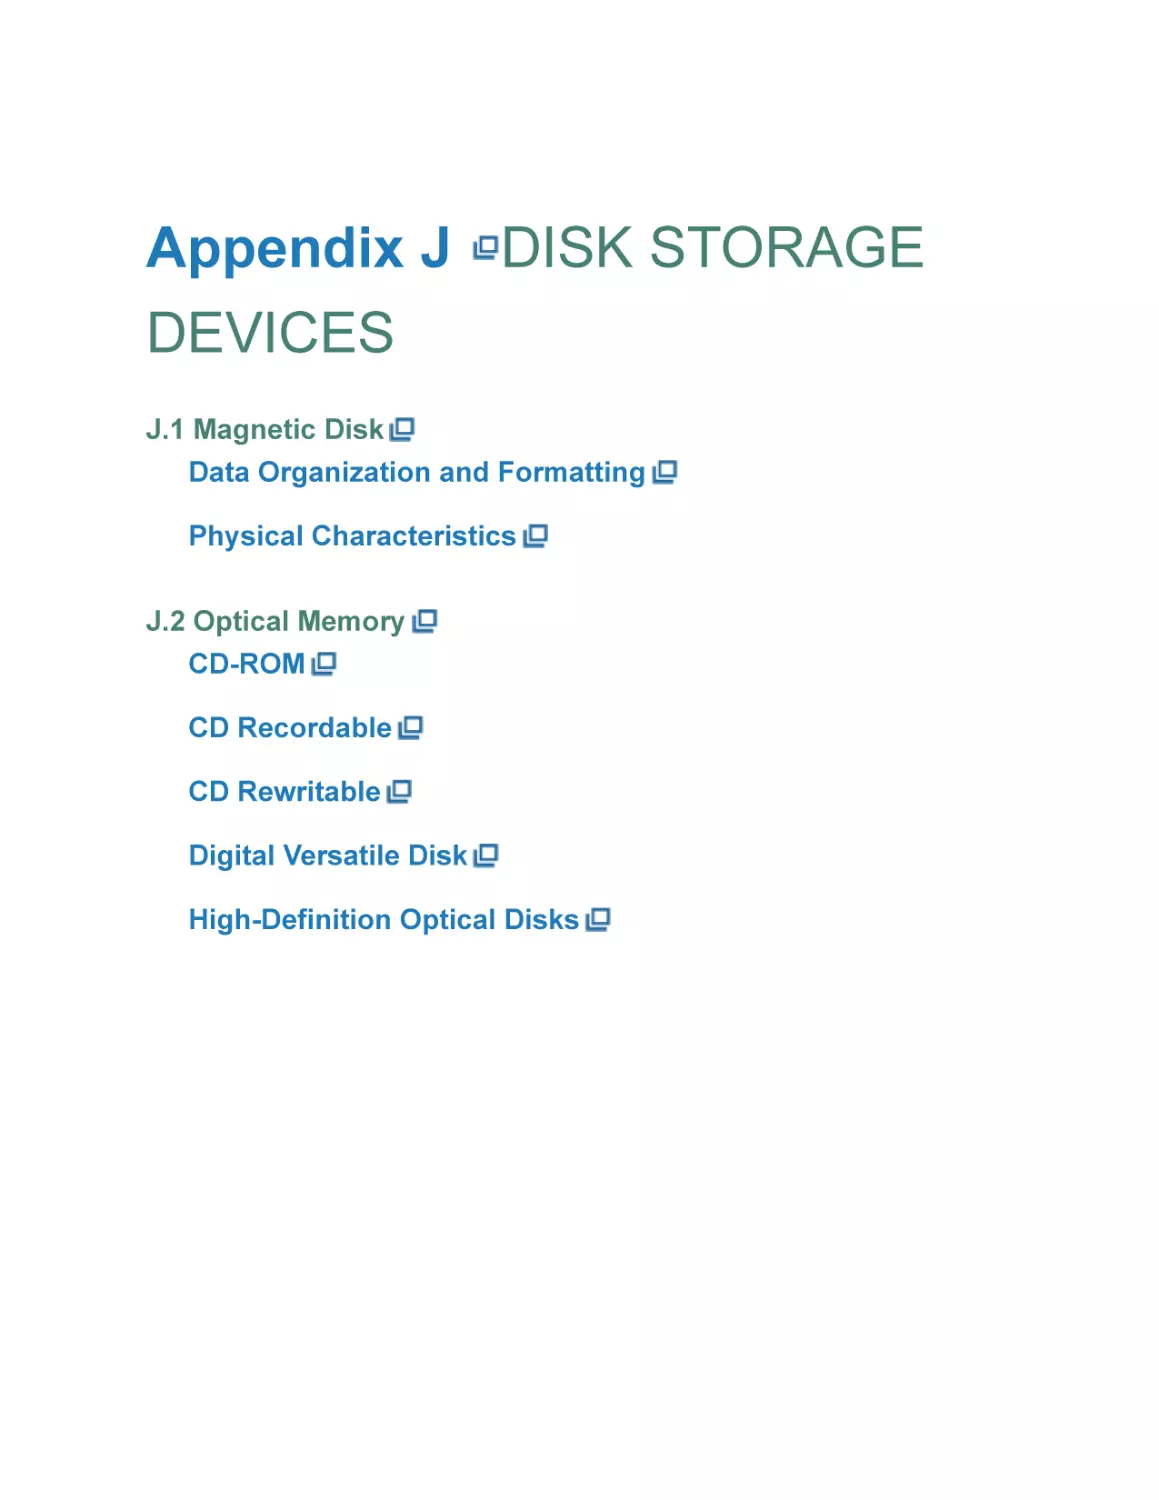 Appendix J DISK STORAGE DEVICES